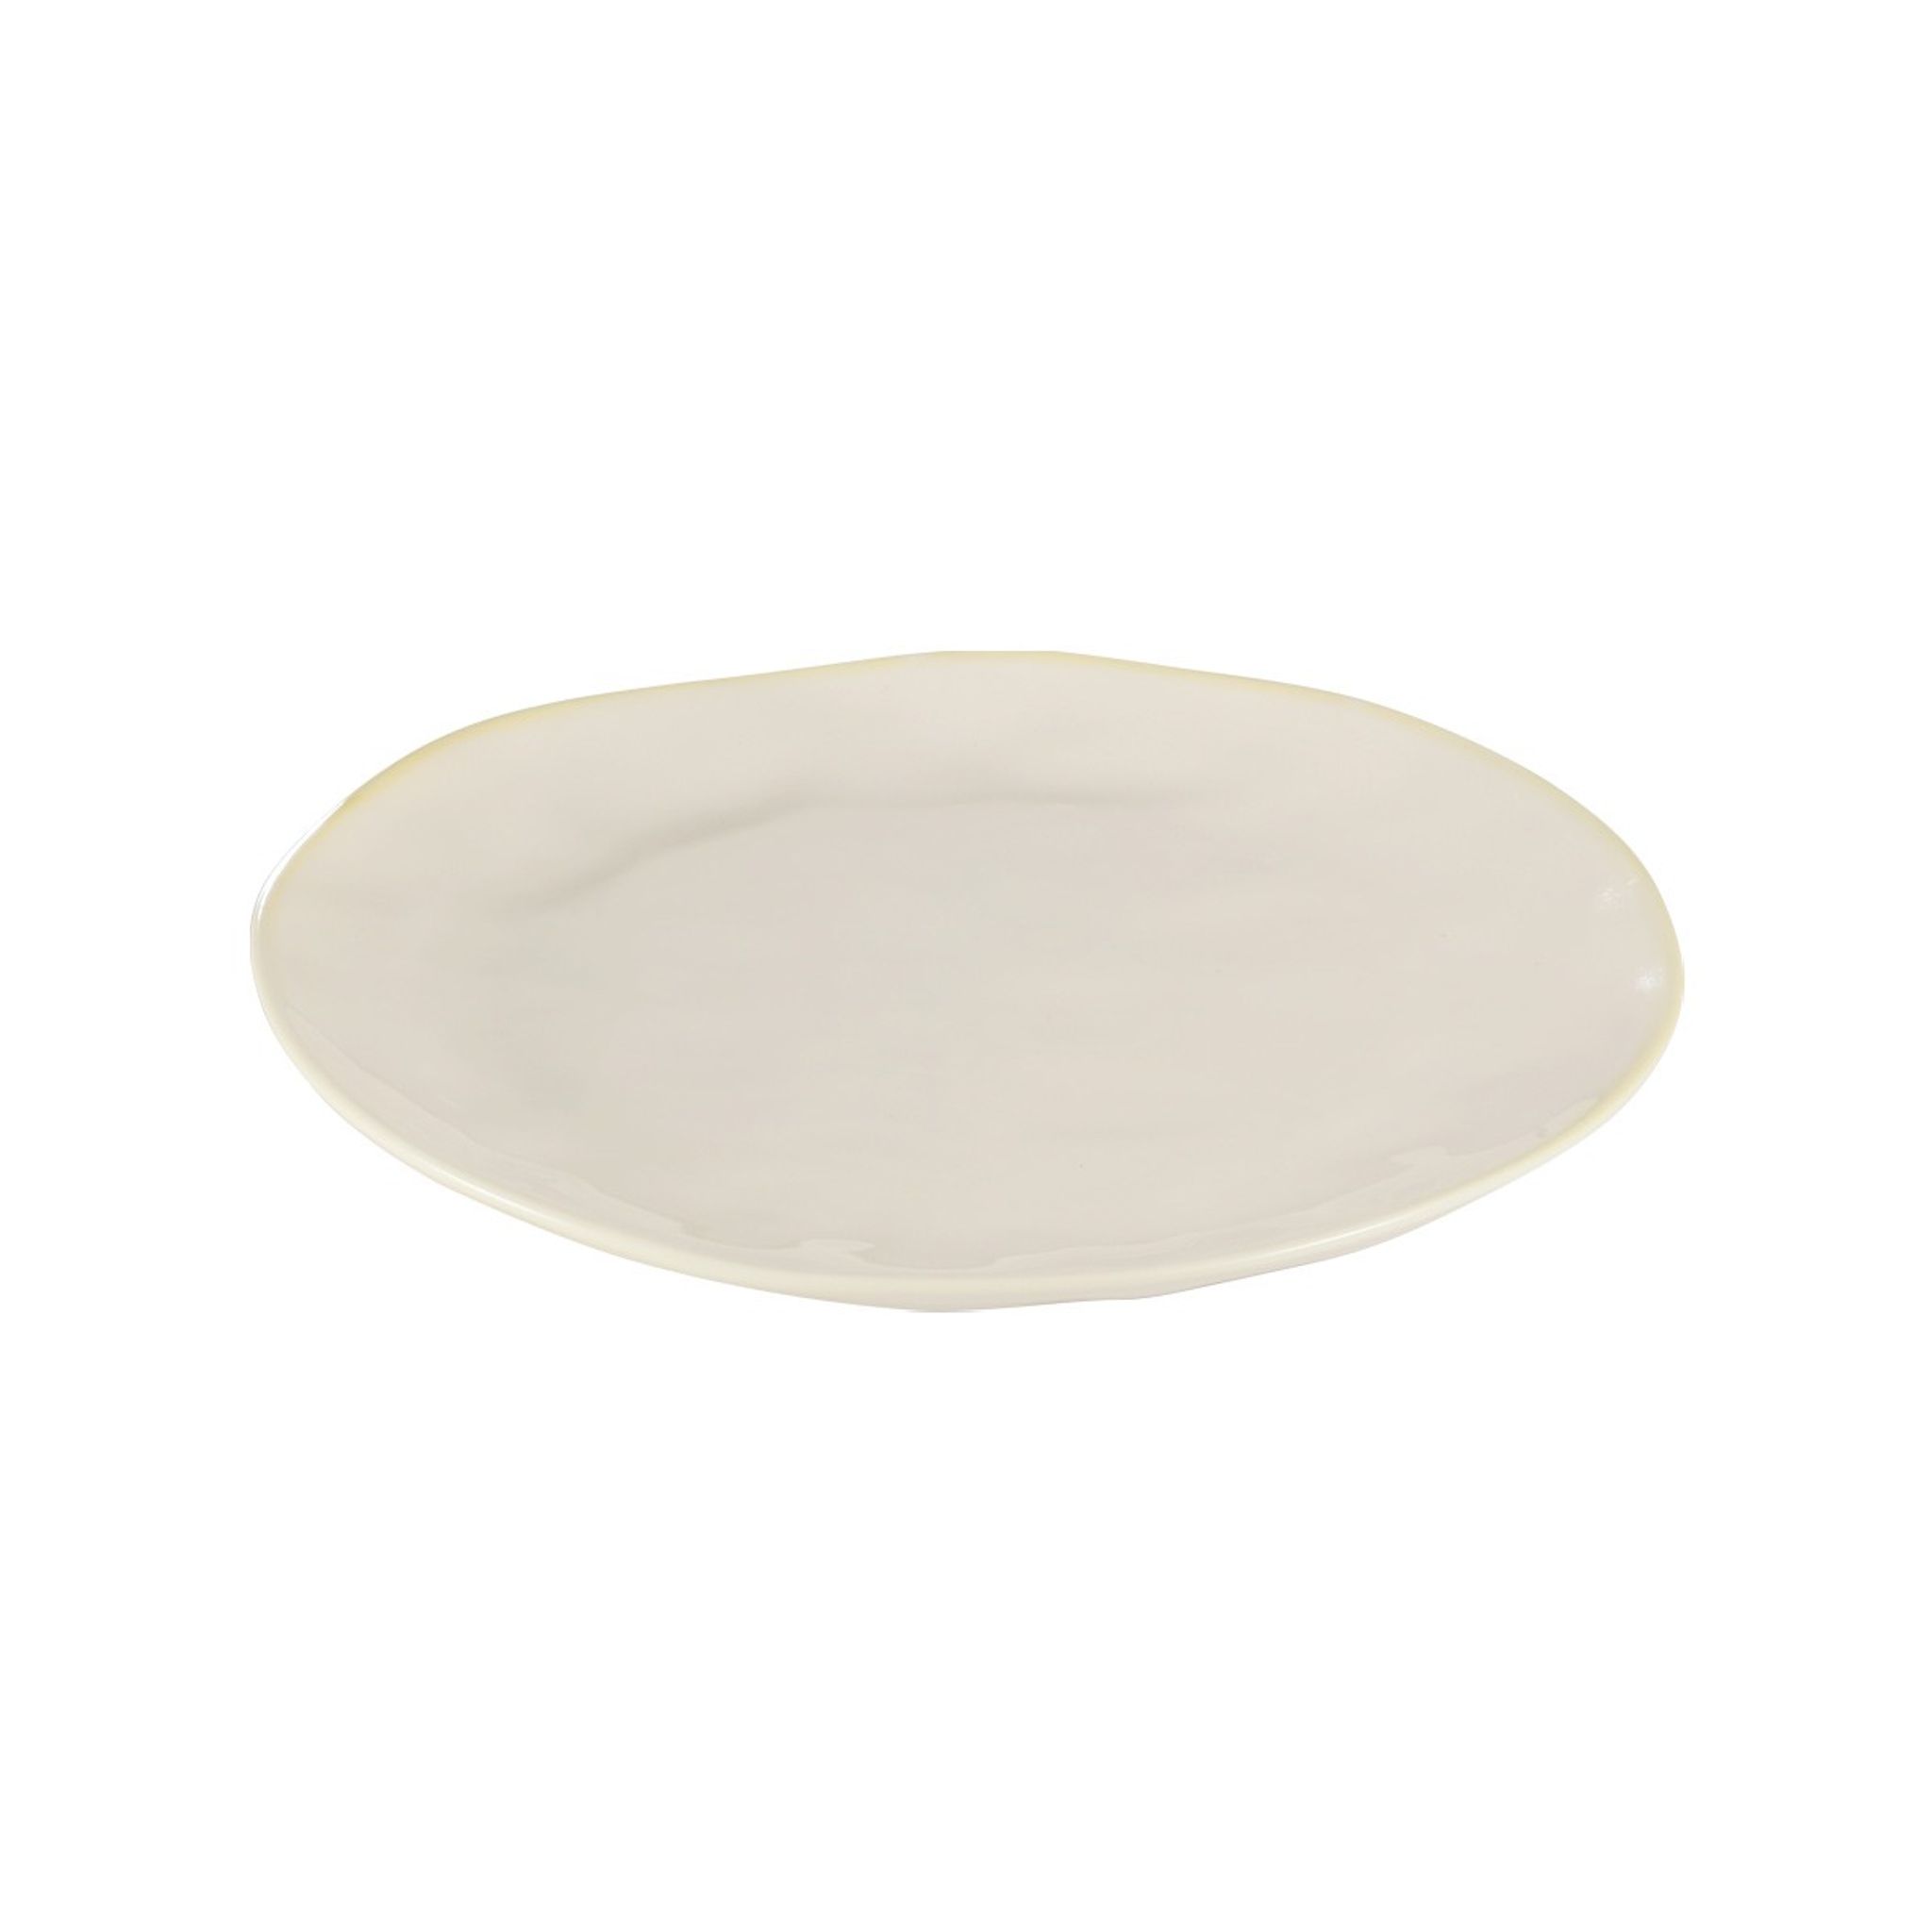 LIVING Desszertes tányér Ø 21 cm, fehér